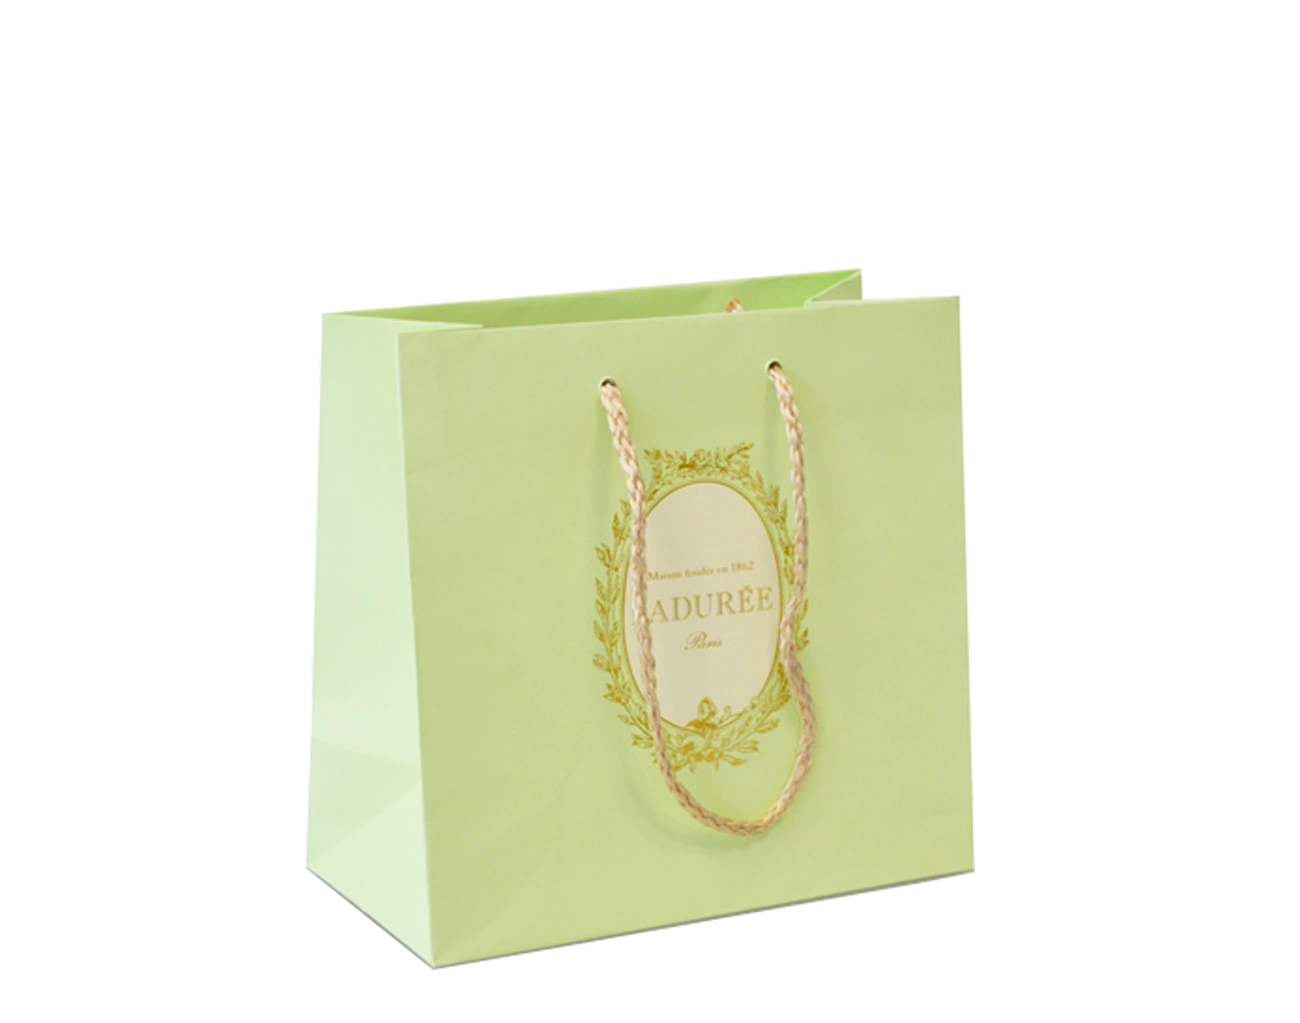 Sac Luxe Personnalisé pour Pâtisserie. Packaging luxe et raffiné, ce sac sur mesure est écologique et dispose d'une impression en Dorure Or + poignées tressées.